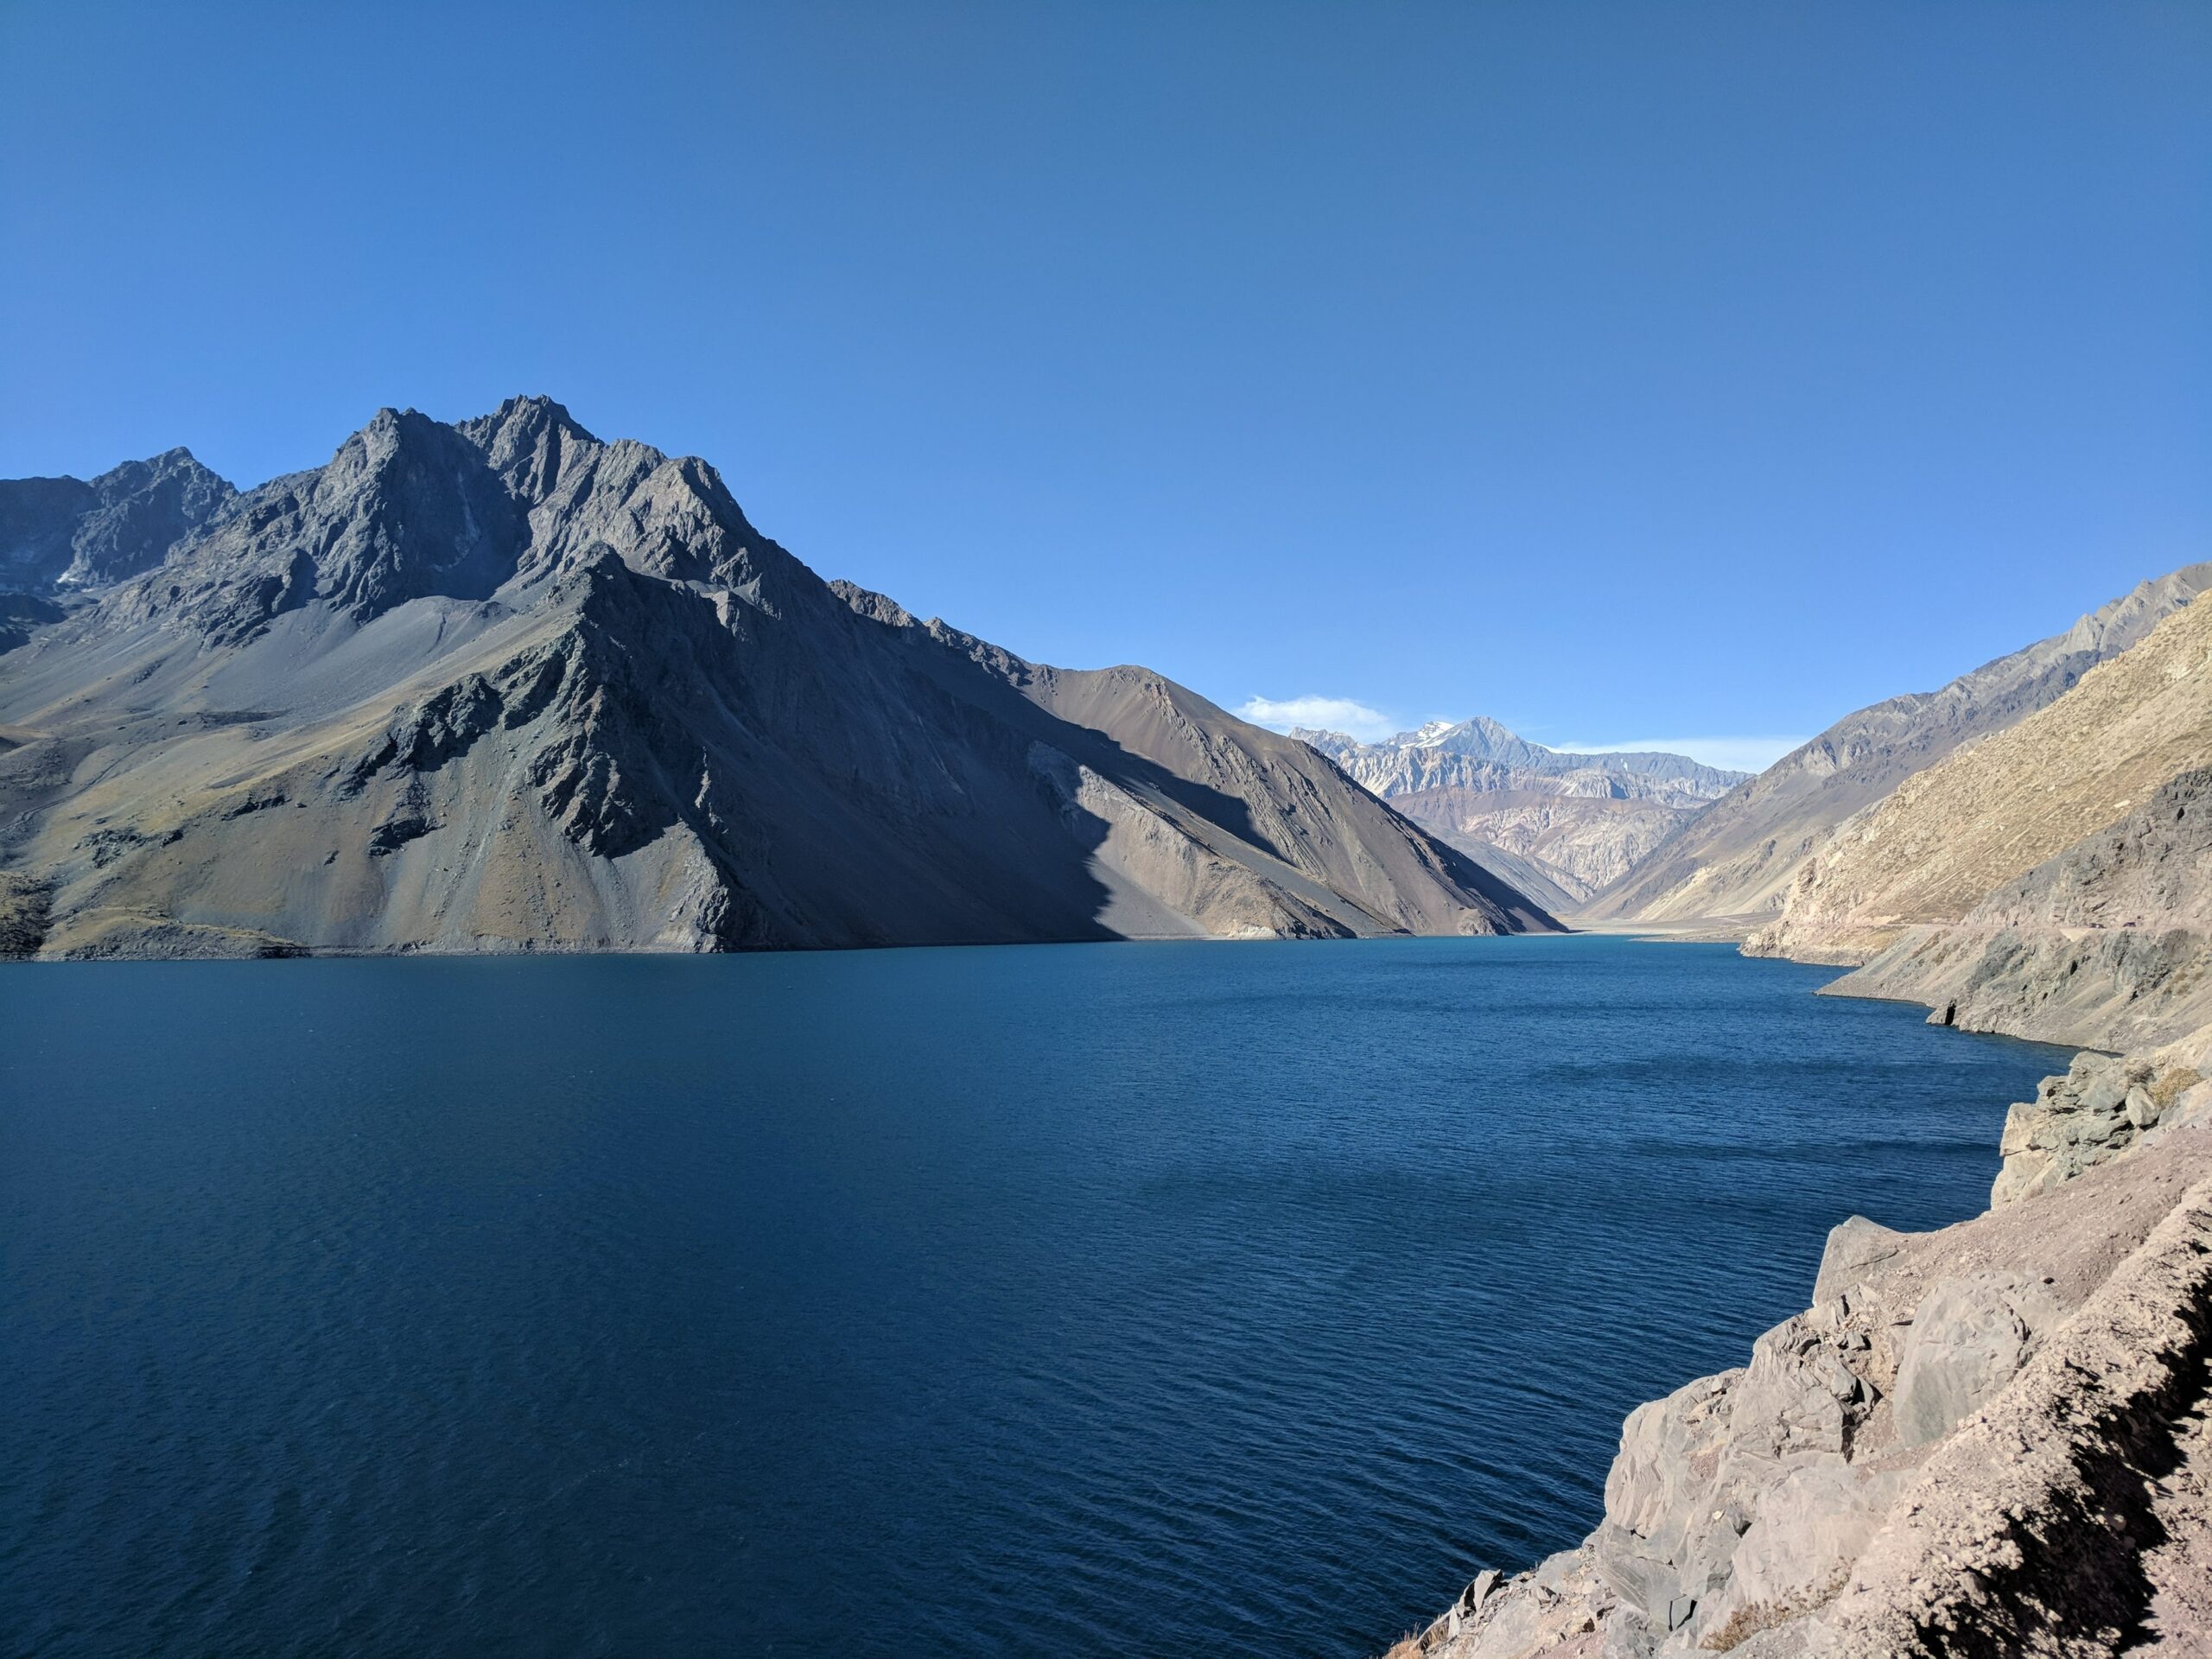 Vista do lago em Cajón del Maipo para ilustrar o post de seguro viagem Chile. Montanhas escuras cercam o local de águas azul-marinho. - Foto:  Alice Yamamura, via Unsplash